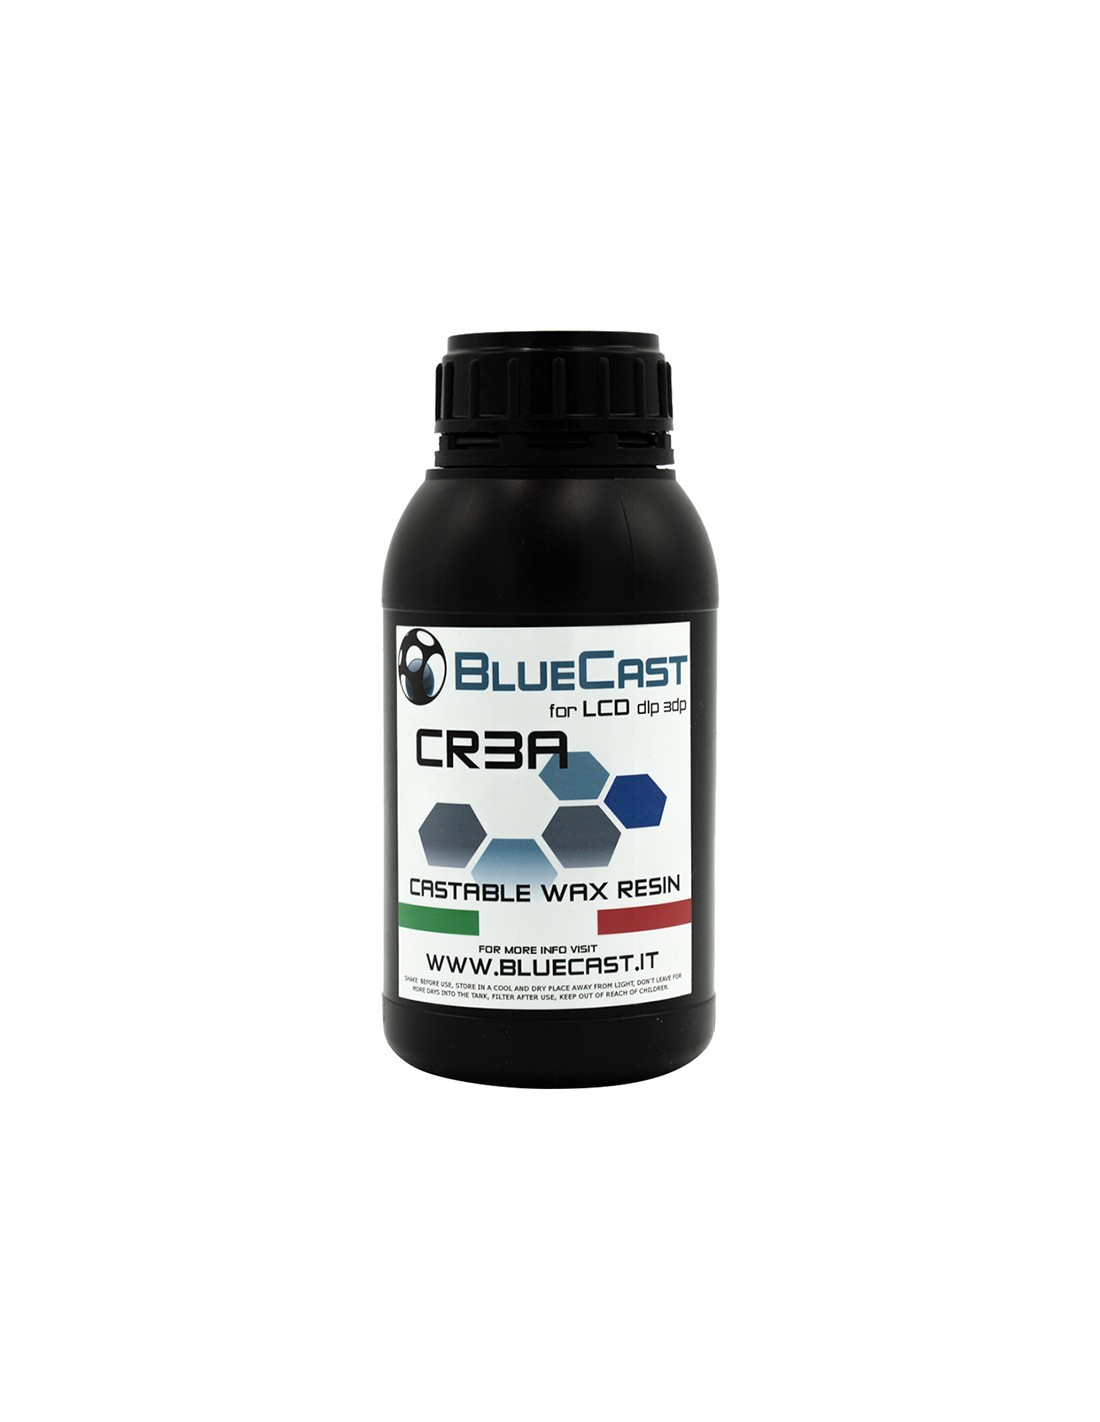 BlueCast CR3A castable resin